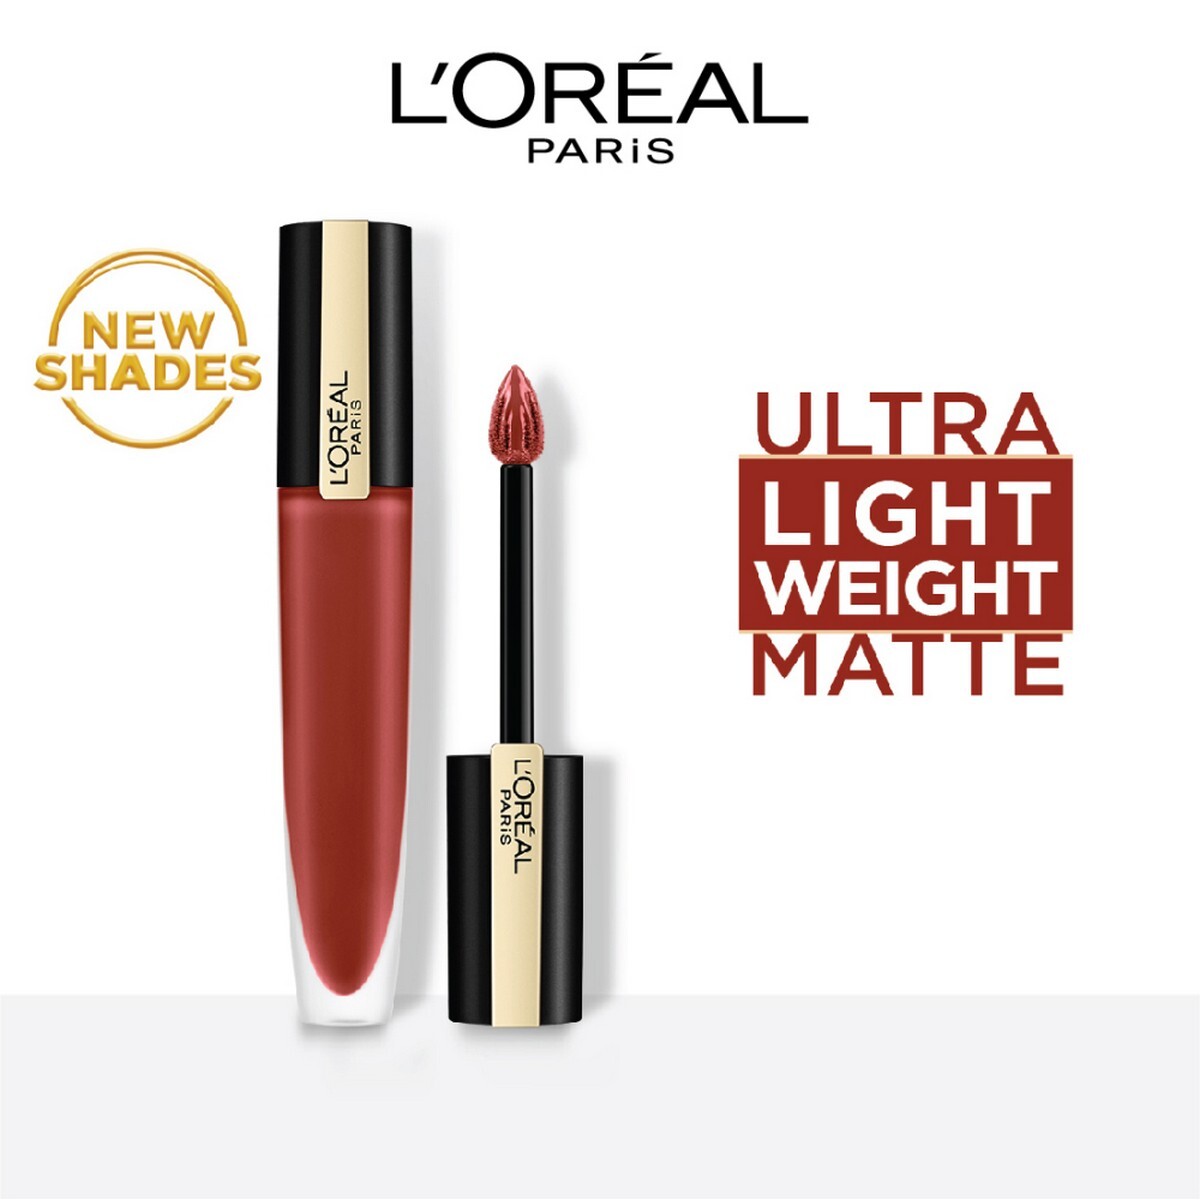 L'Oreal Paris Rouge Signature Matte Liquid Lipstick 130 I Amaze,7g